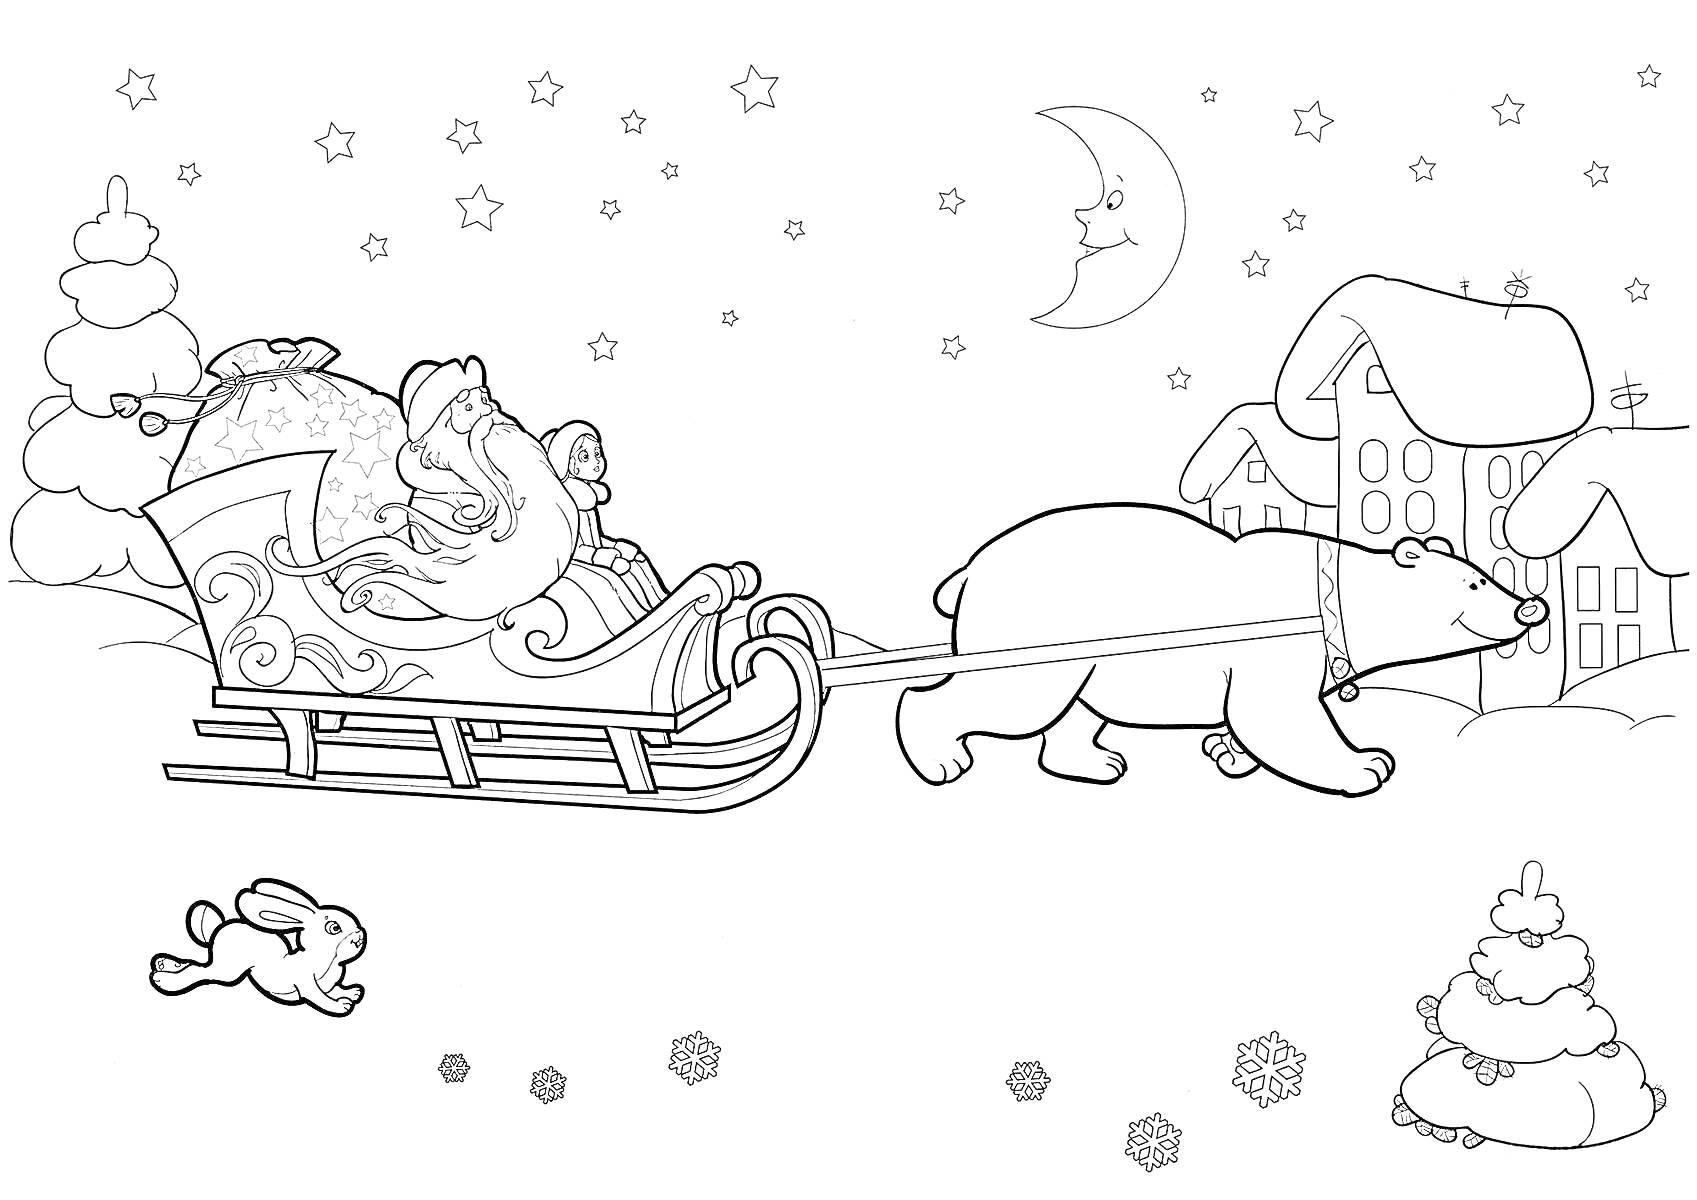 Раскраска Санта Клаус в санях, запряжённых медведем, прыгающий заяц, дома, деревья, снег, звёзды, месяц